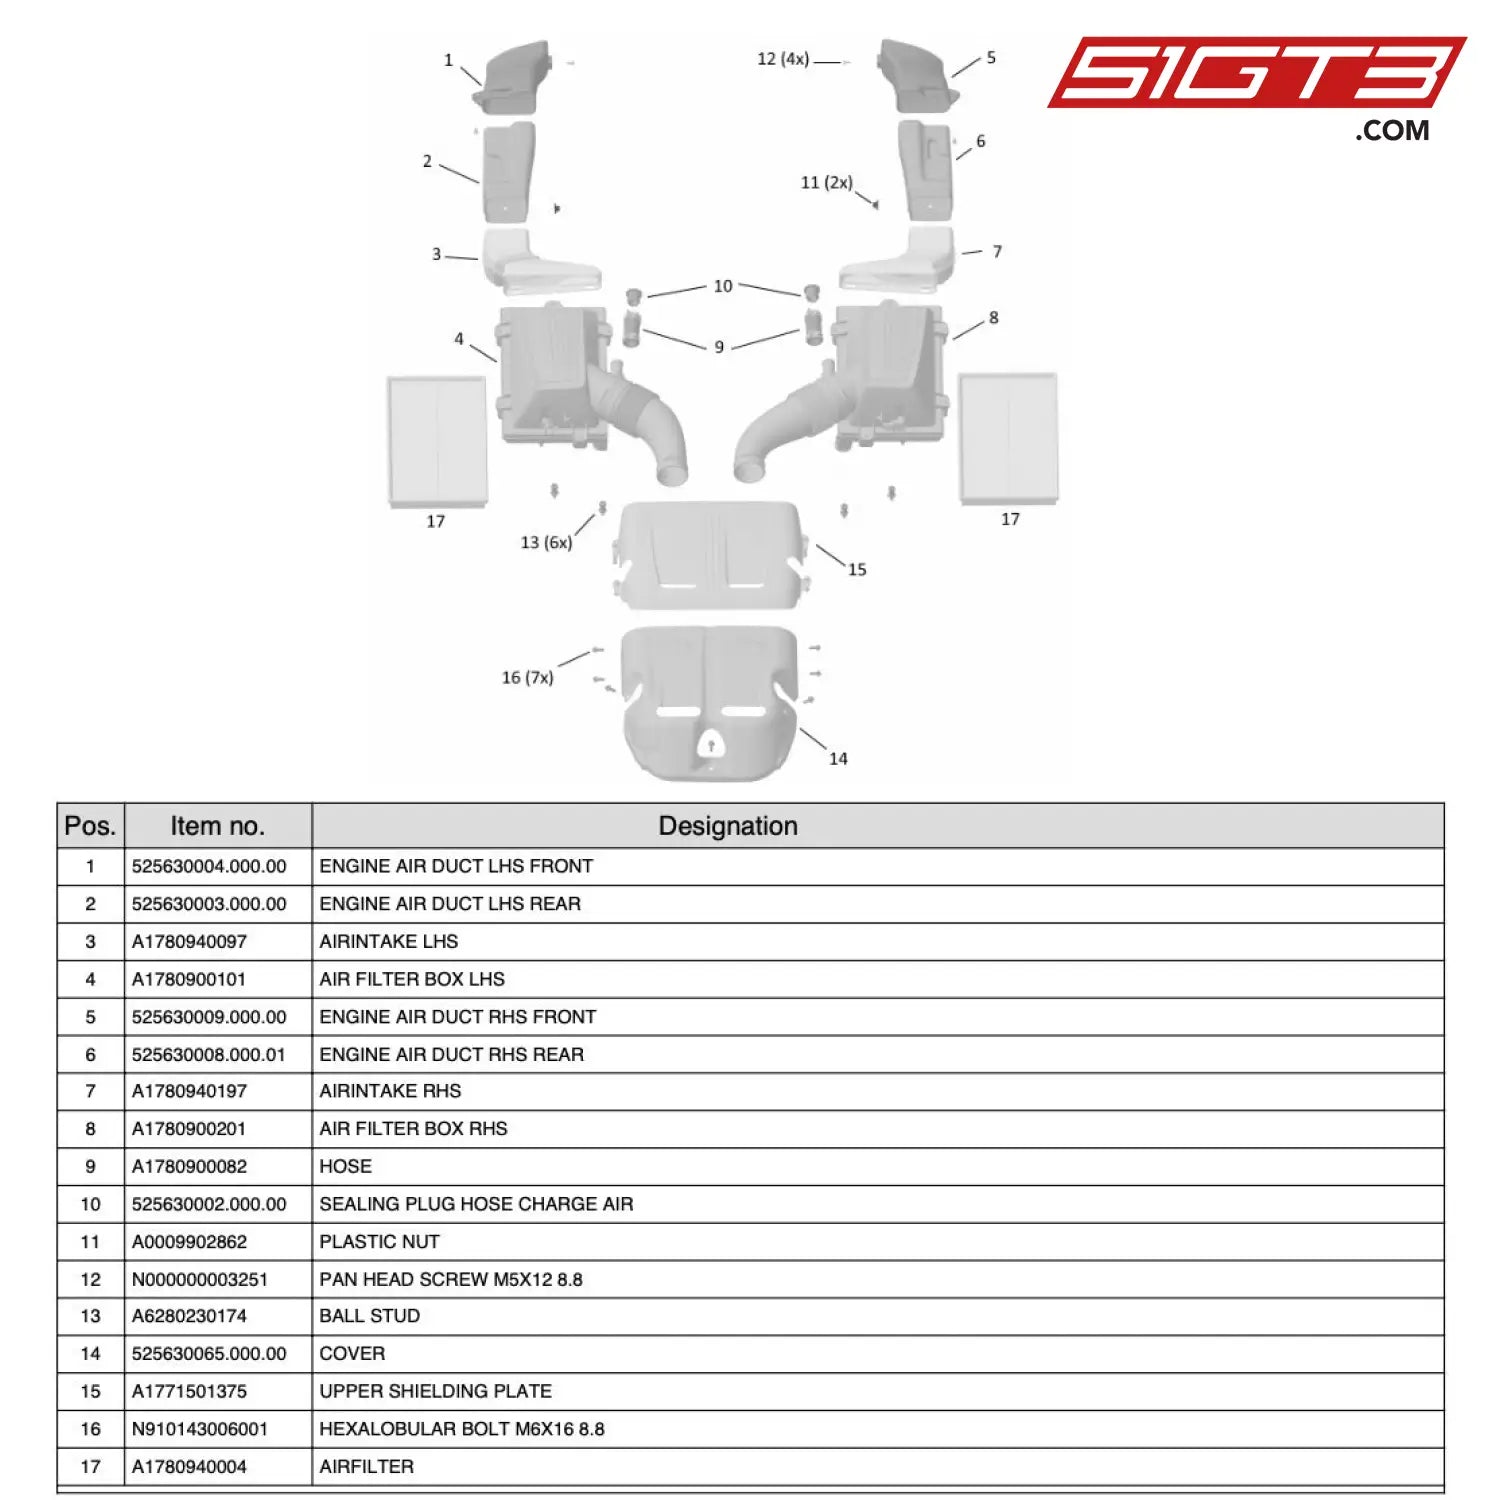 Engine Air Duct Lhs Rear - 525630003.000.00 [Mercedes-Amg Gt4] Air Intake